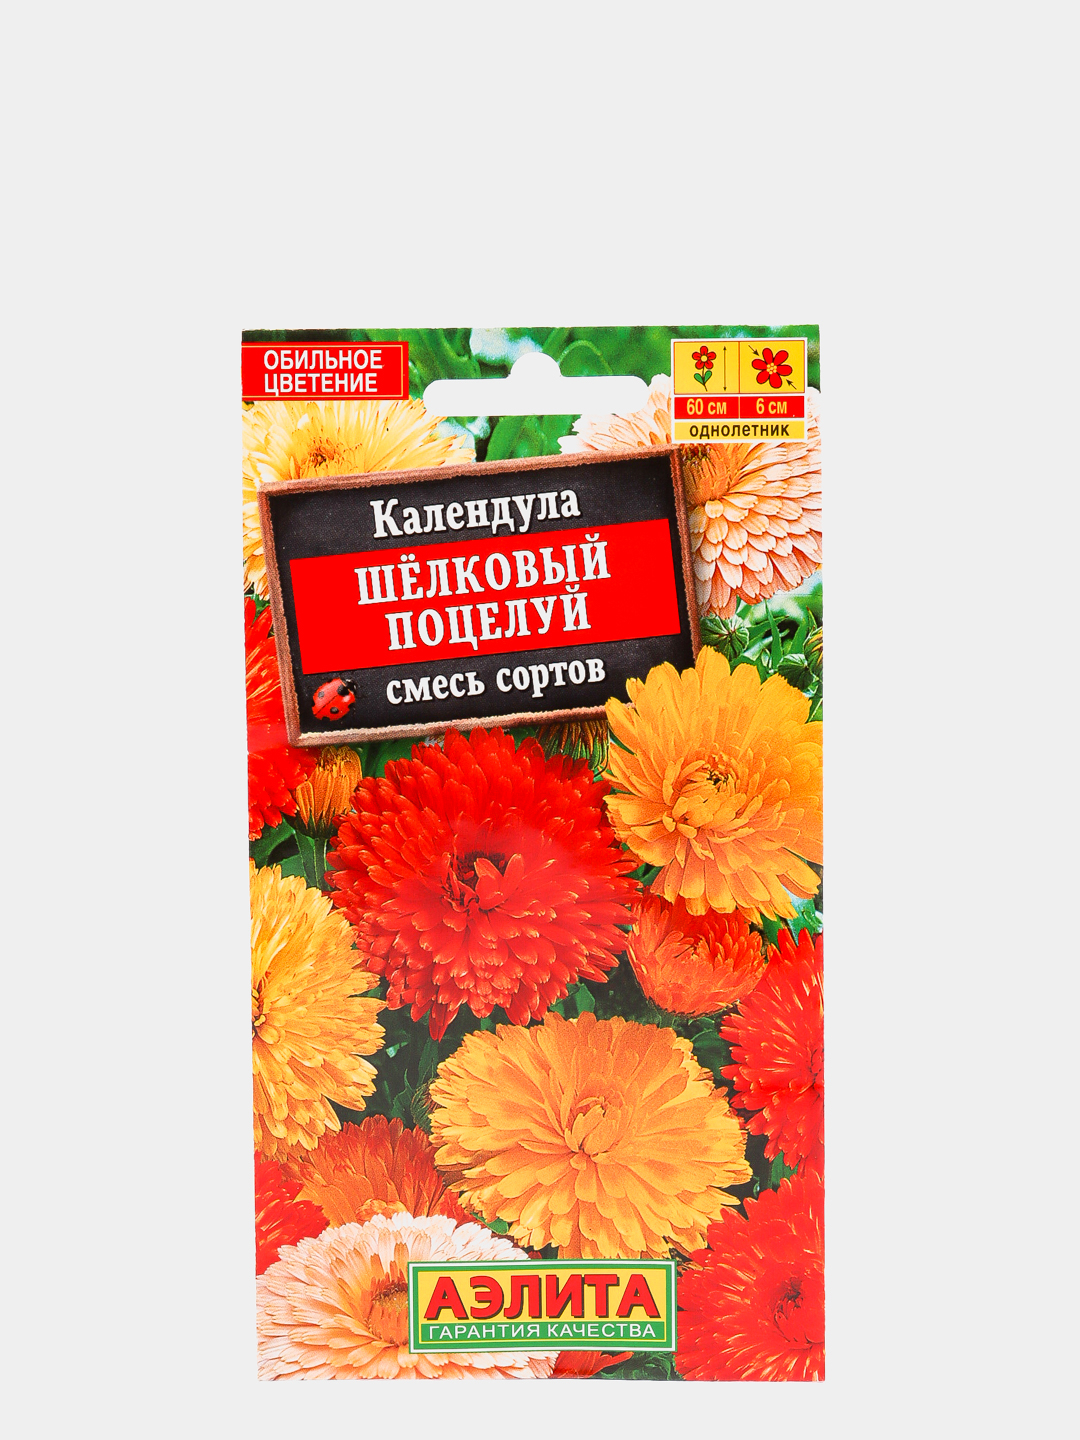 Календула Шелковый поцелуй (смесь сортов), семена цветы, Аэлита купить поцене 55 ₽ в интернет-магазине KazanExpress